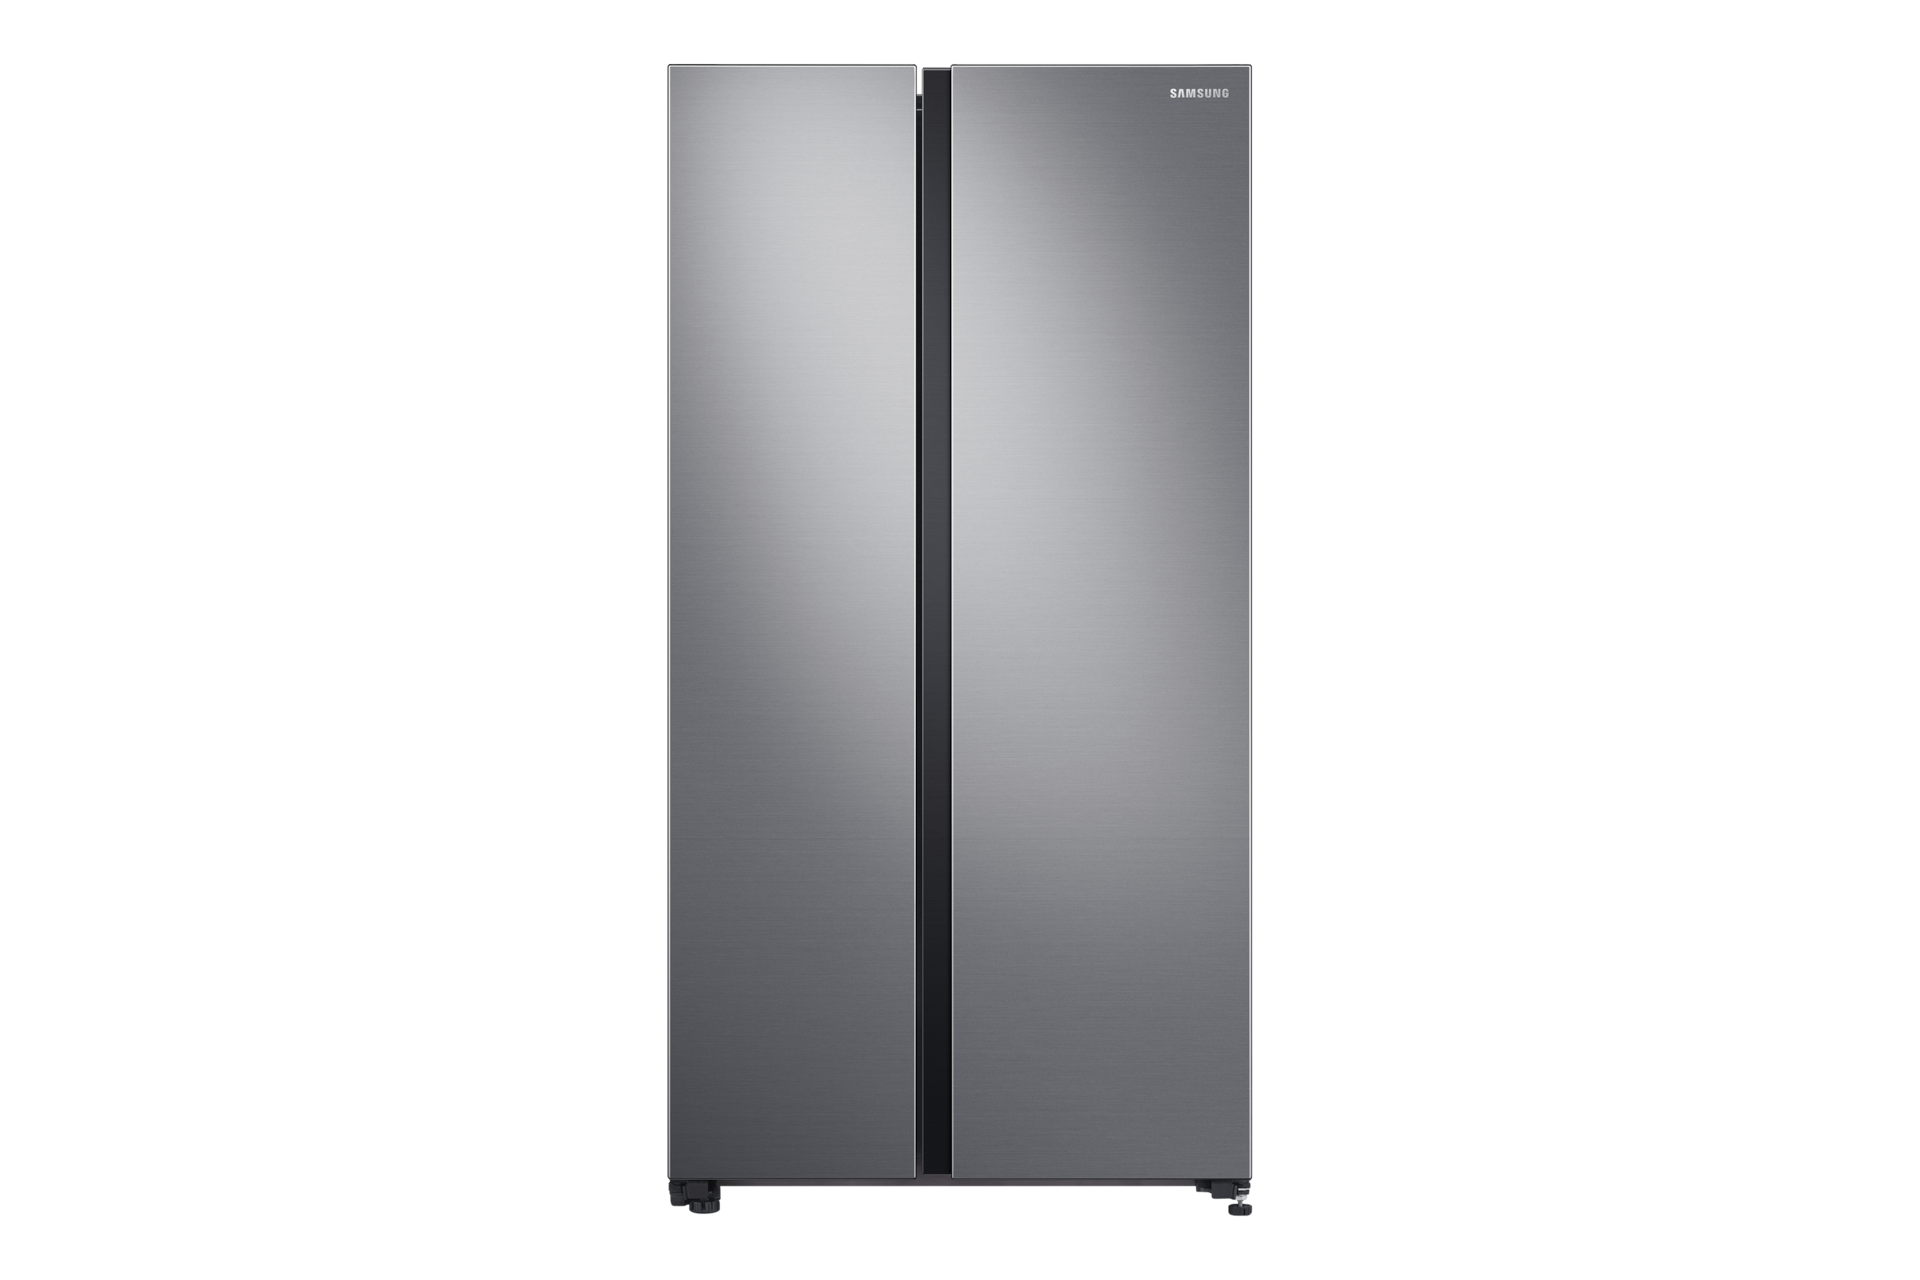 Khám phá tính năng, tham khảo giá tủ lạnh Samsung Inverter RS62R5001M9 SV màu bạc (silver), 2 cửa và đặt mua tại trang Gia Dụng - Samsung Việt Nam!